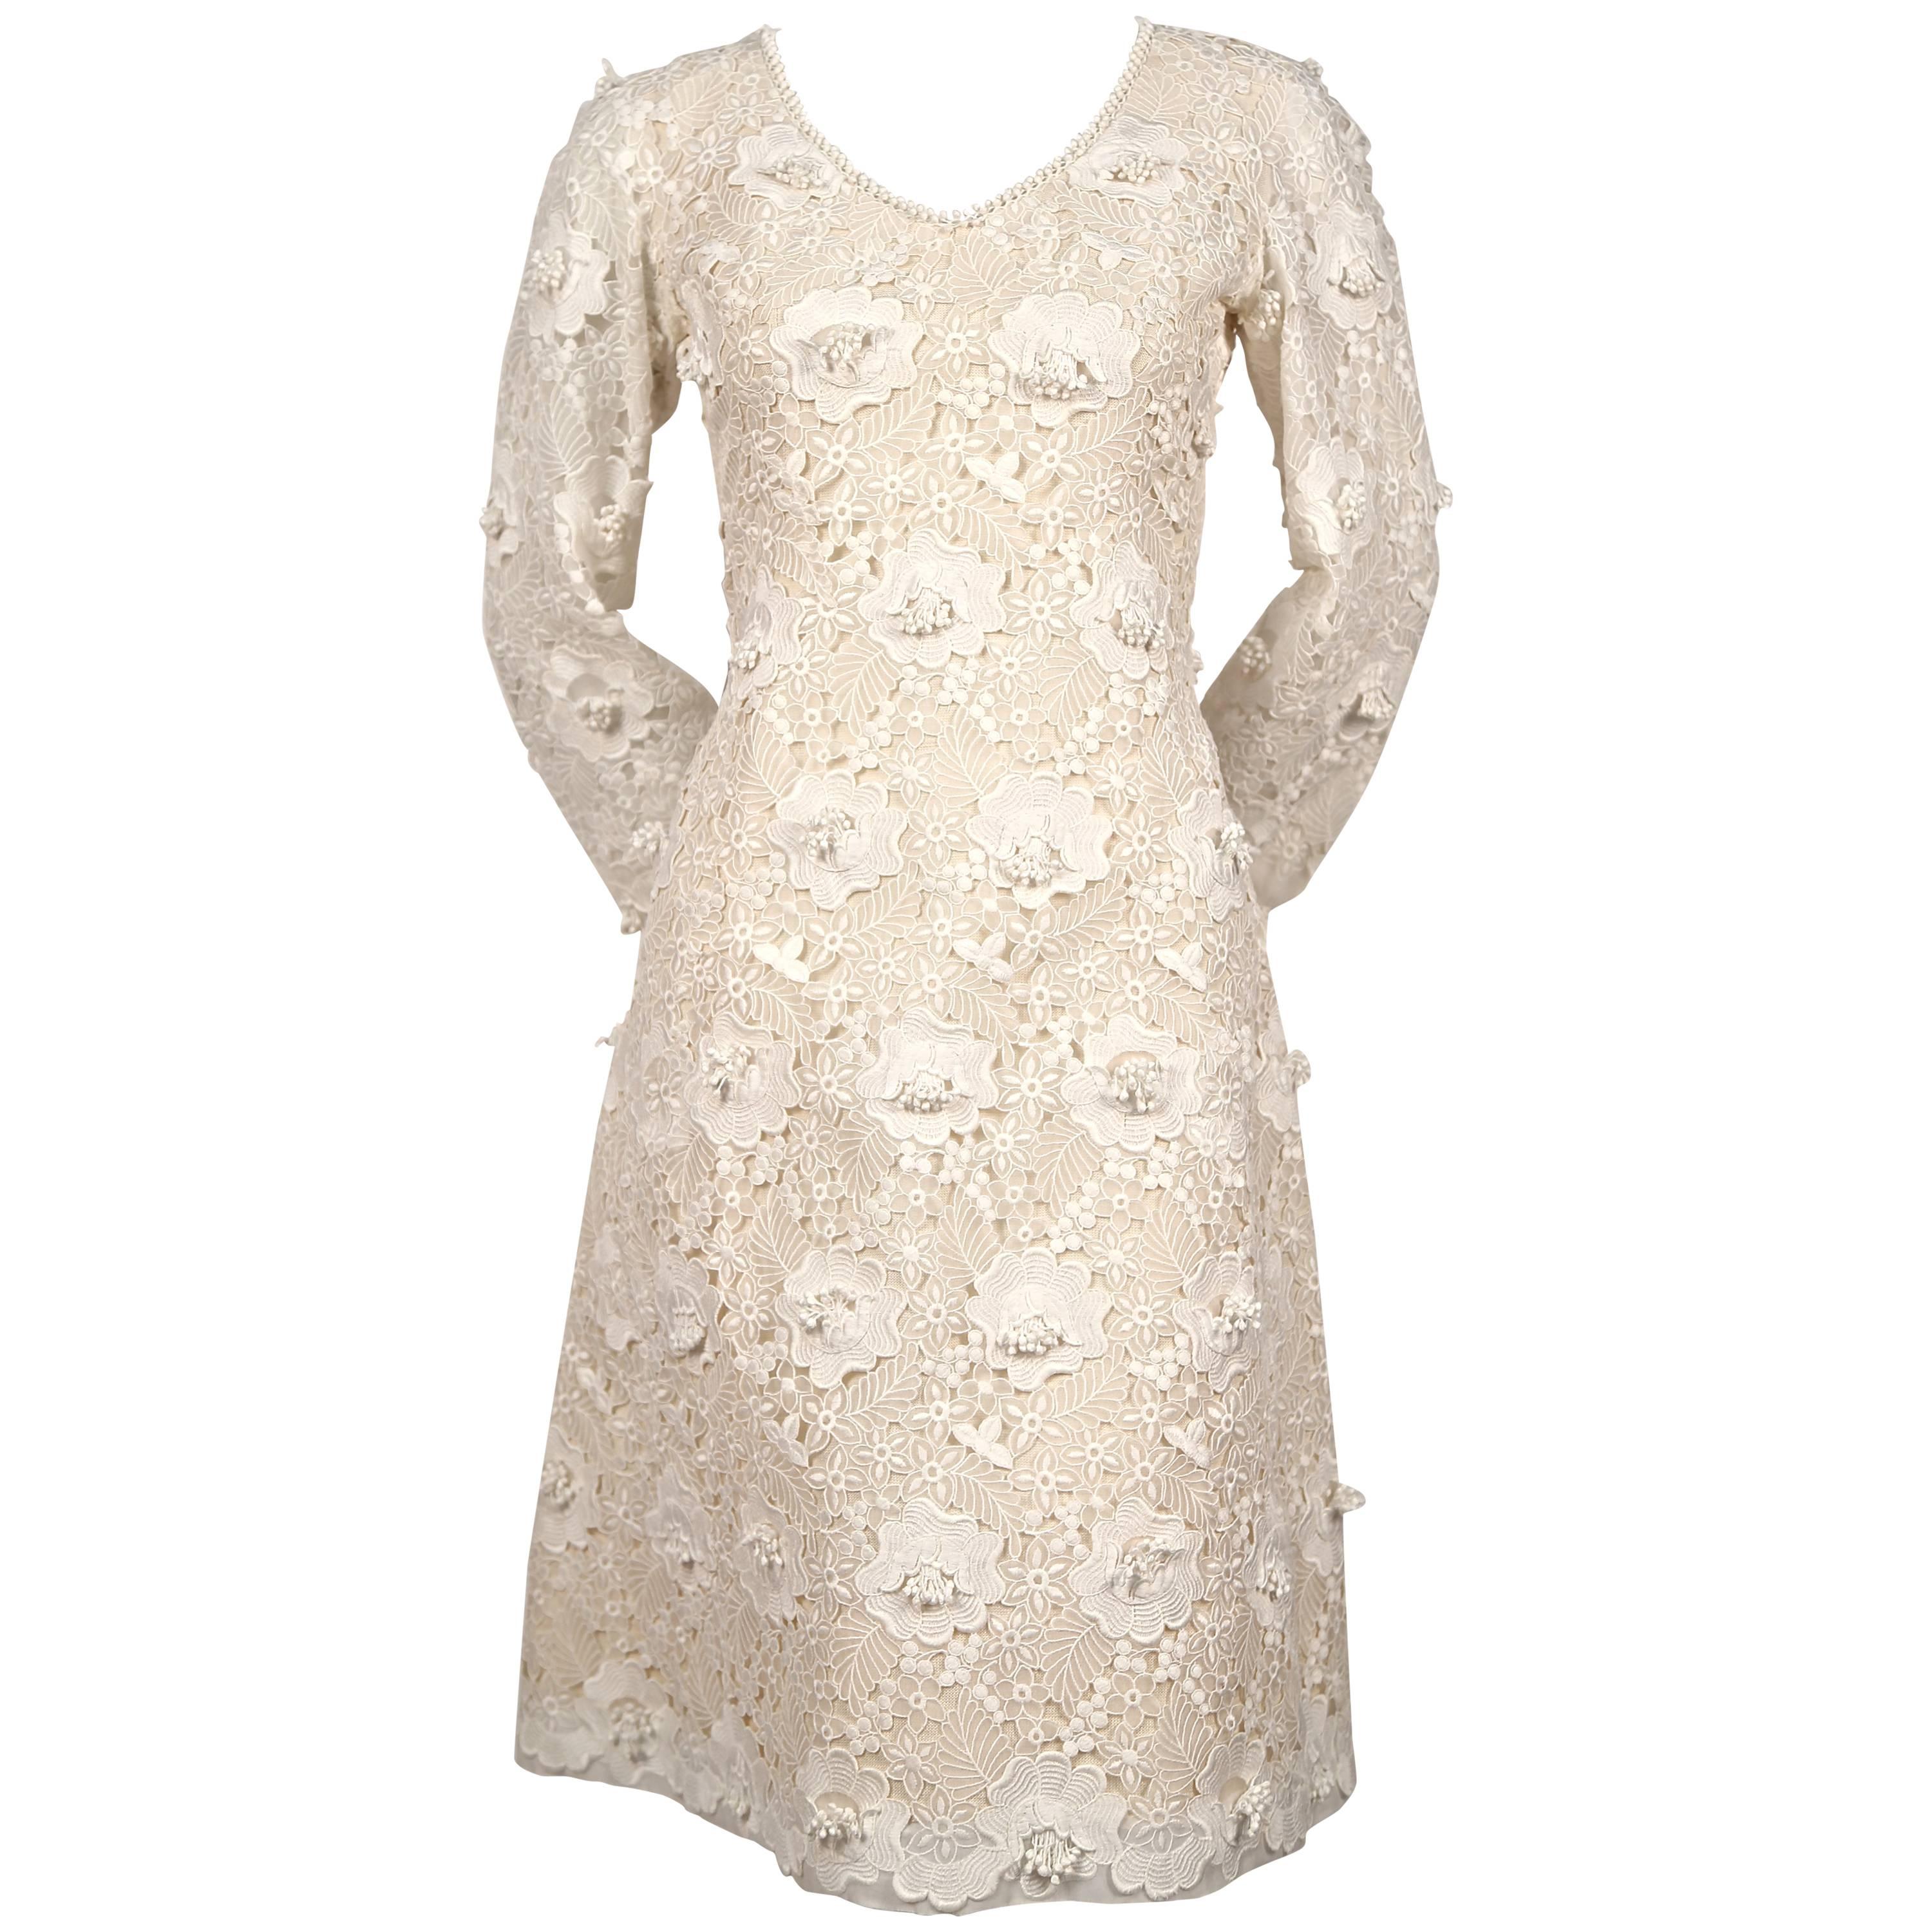 1964 YVES SAINT LAURENT demi-couture Venice lace dress